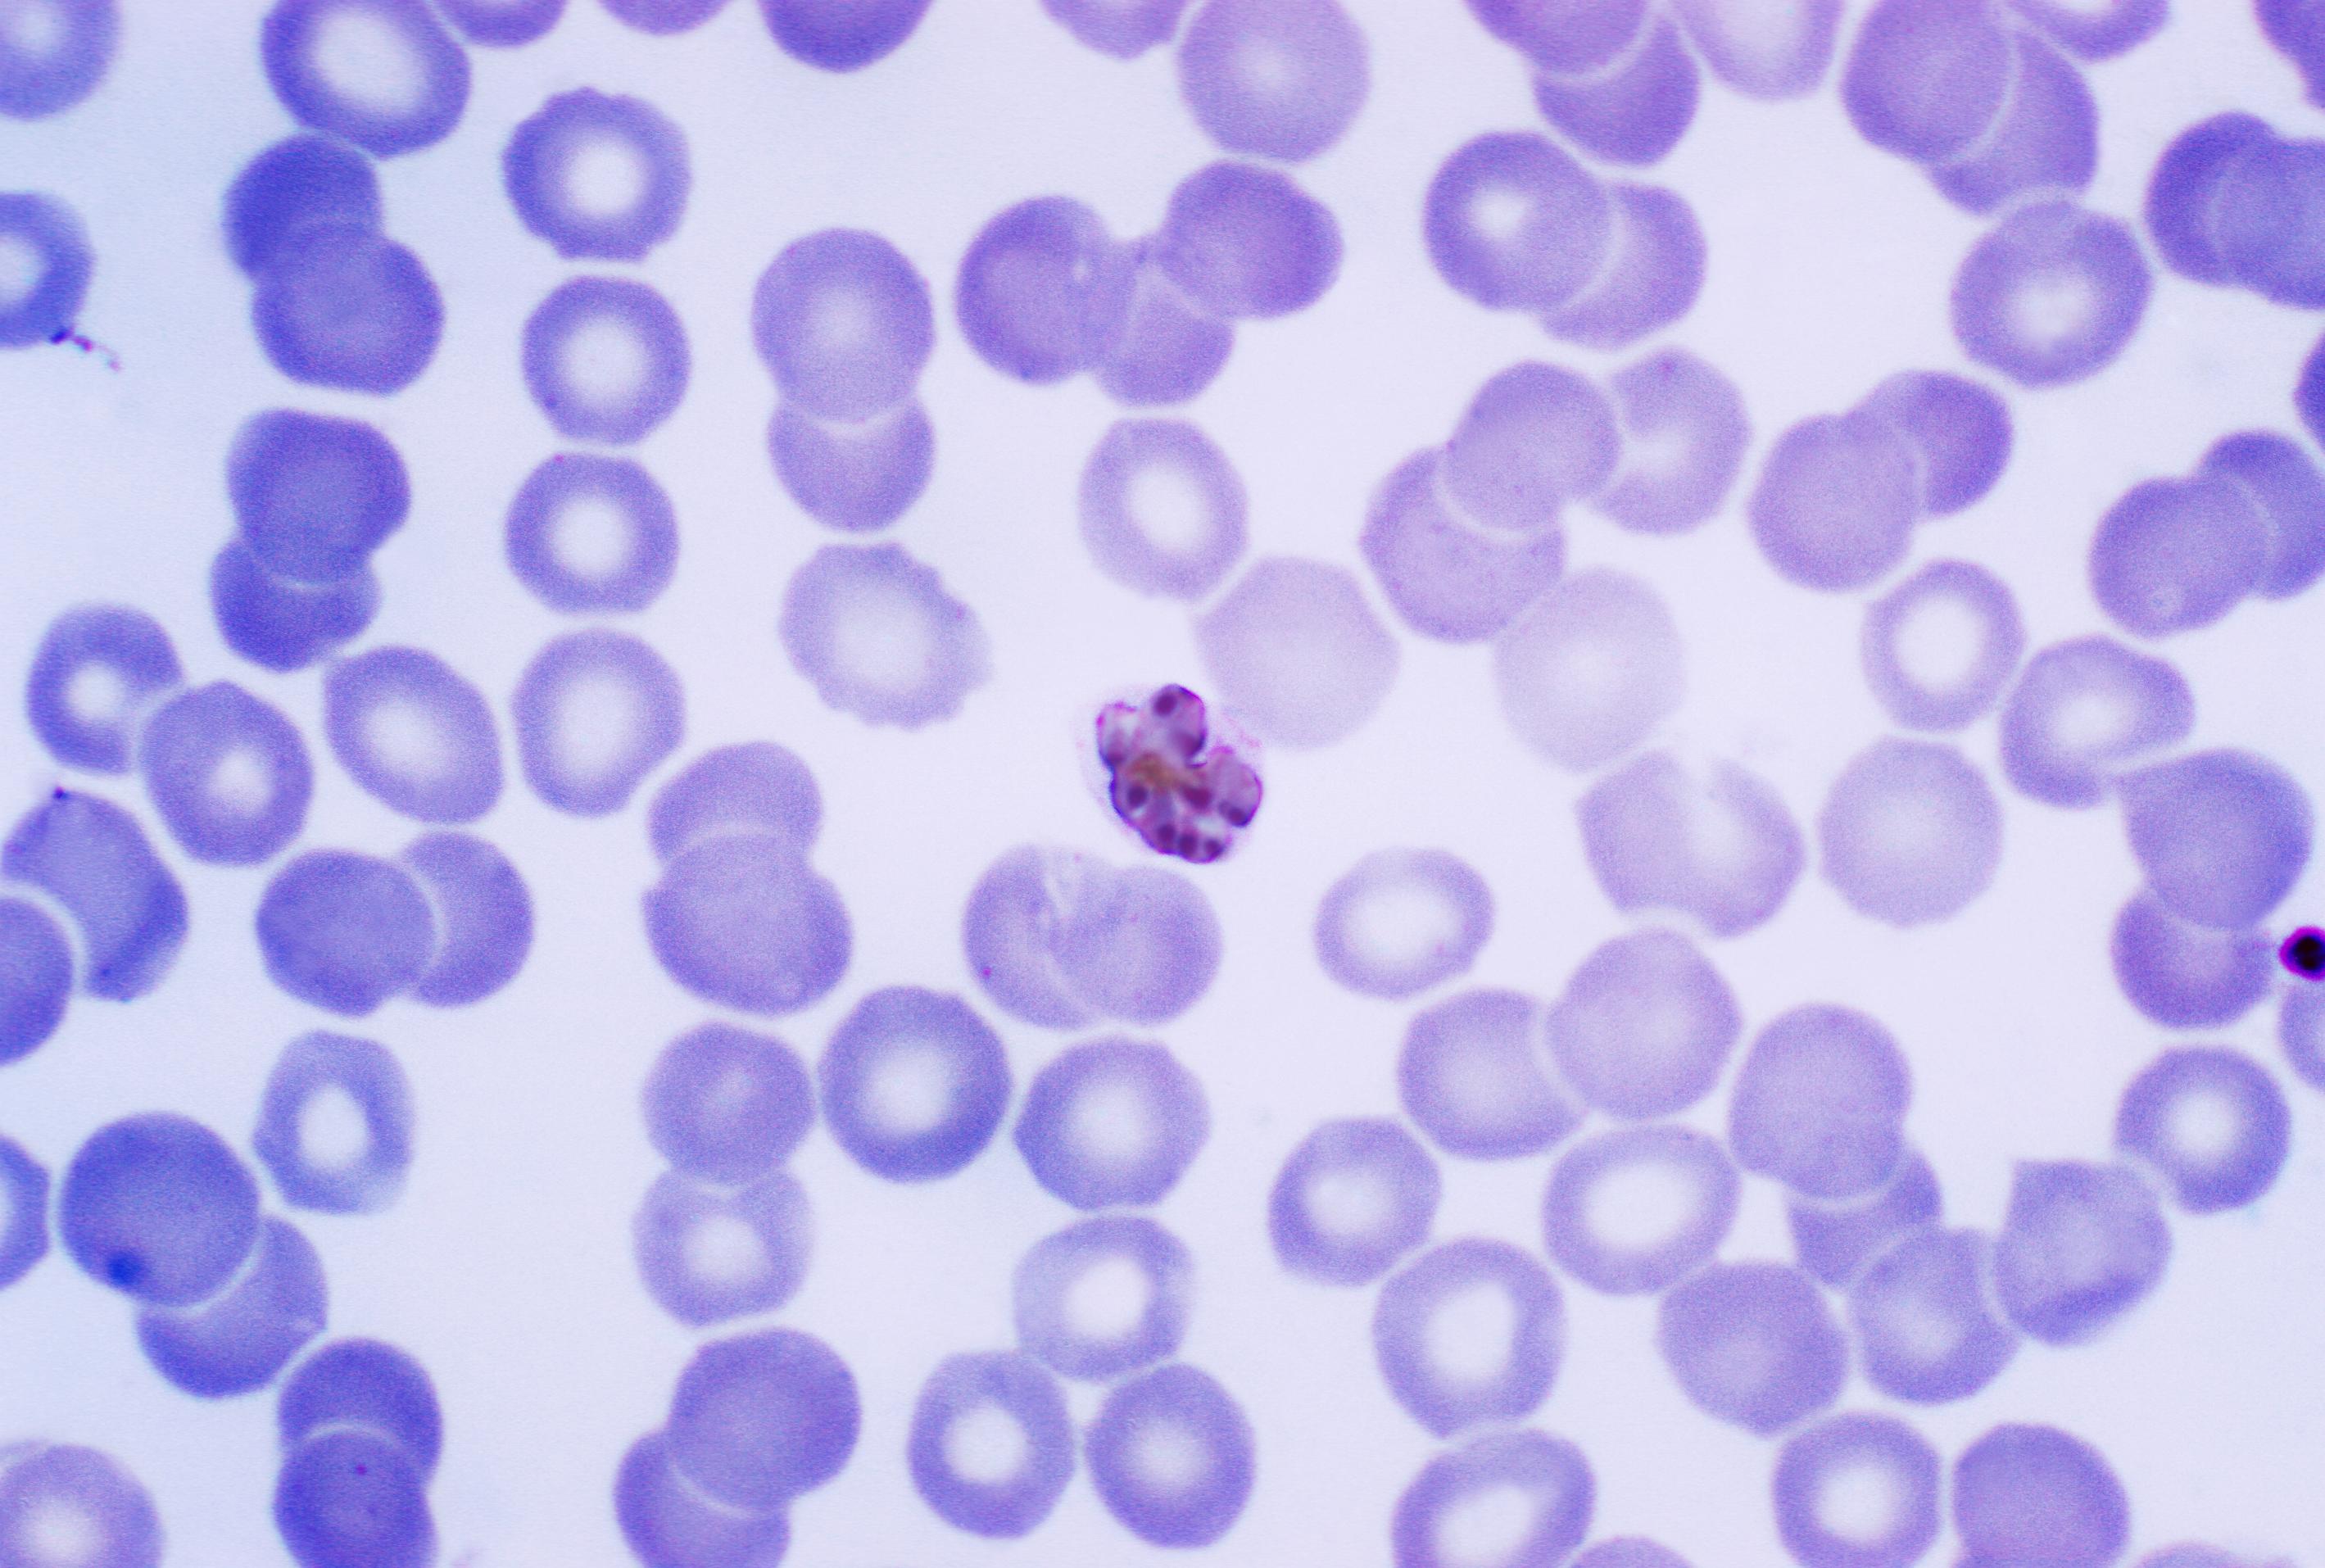 Volwassen malaria parasiet tussen de rode bloedlichaampjes